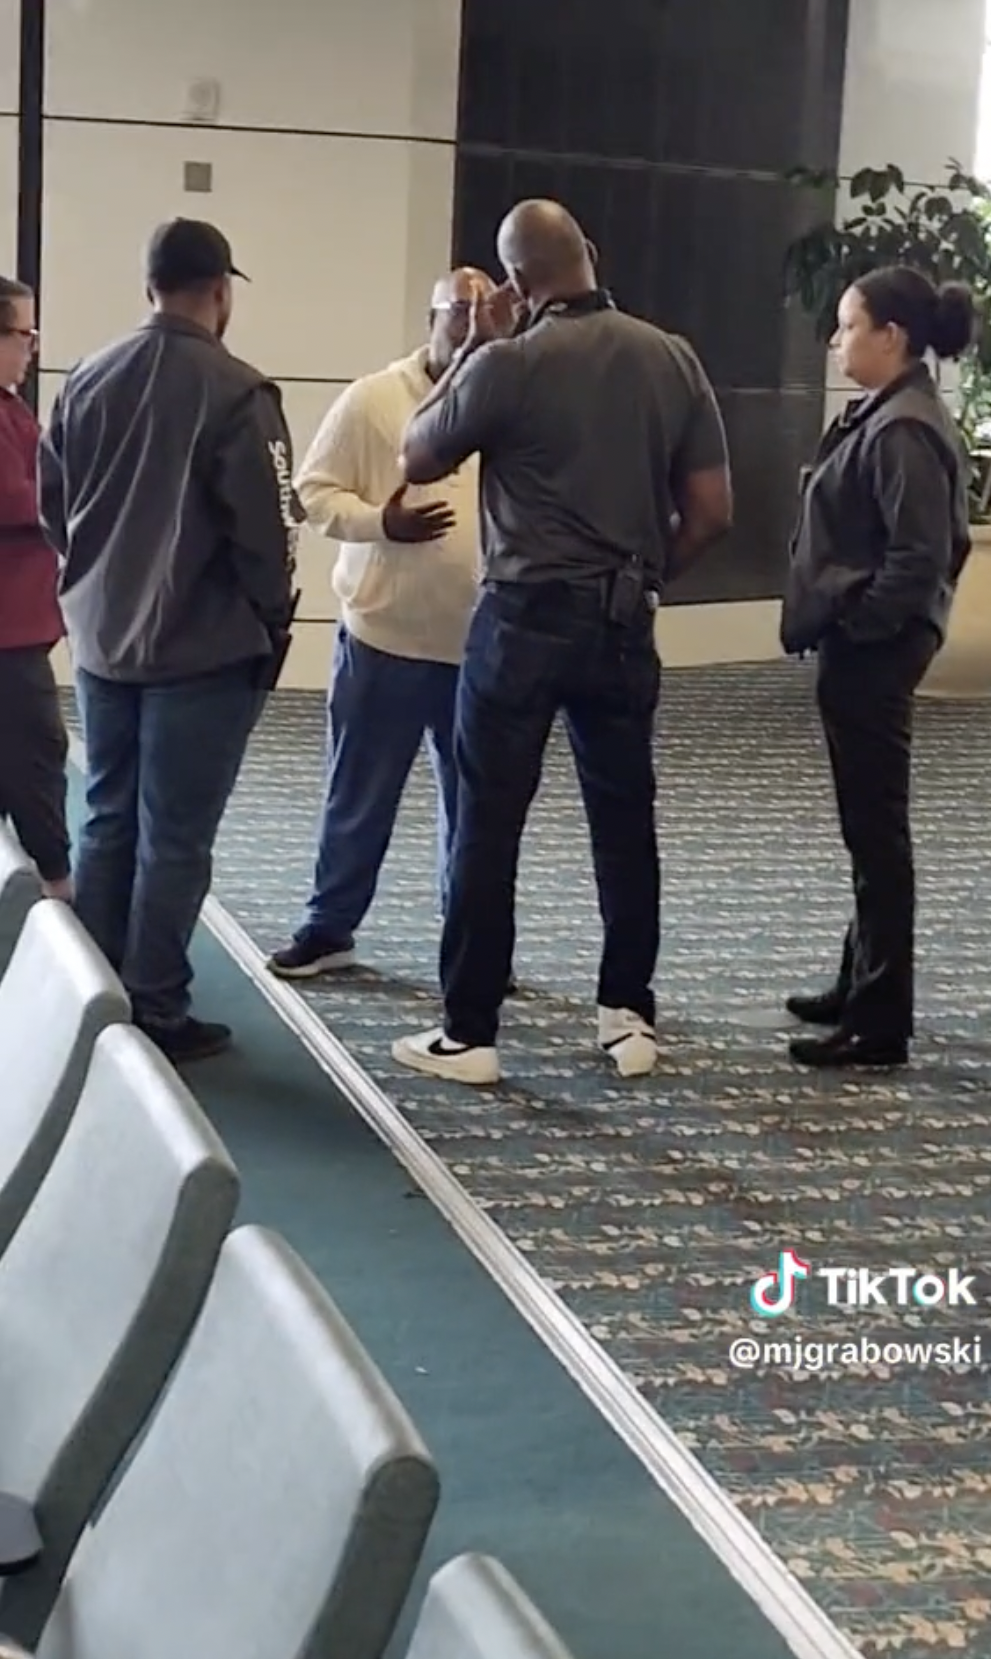 Der aufgebrachte Passagier wird von den Behörden des Flughafens Orlando und der Polizei angesprochen | Quelle: TikTok/mjgrabowski